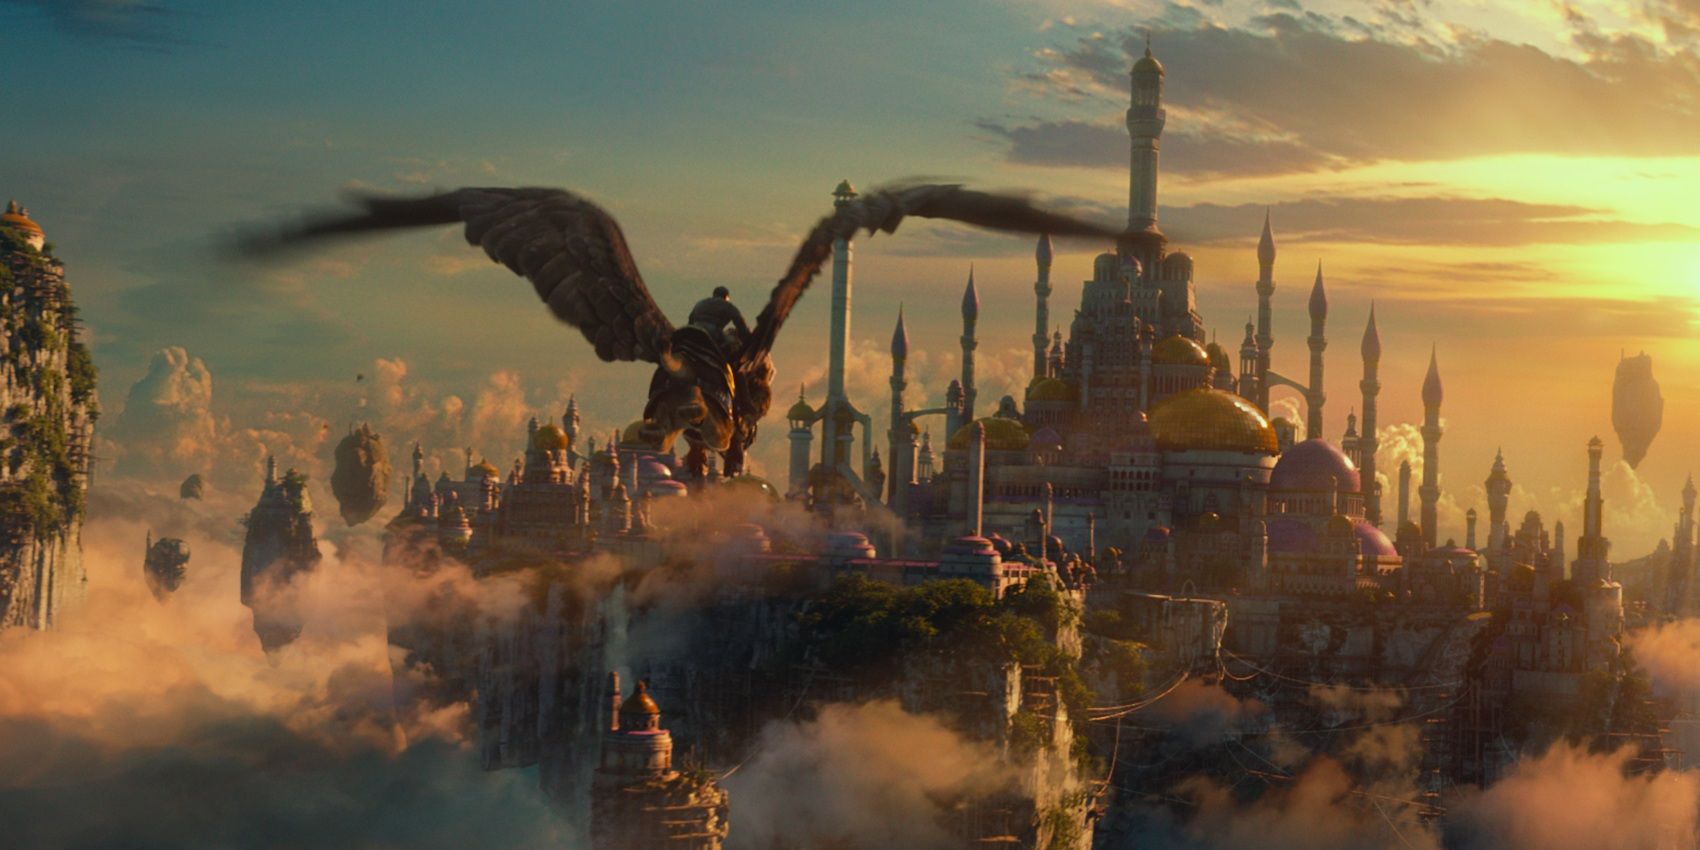 Um pássaro gigante voando sobre o reino no filme Warcraft